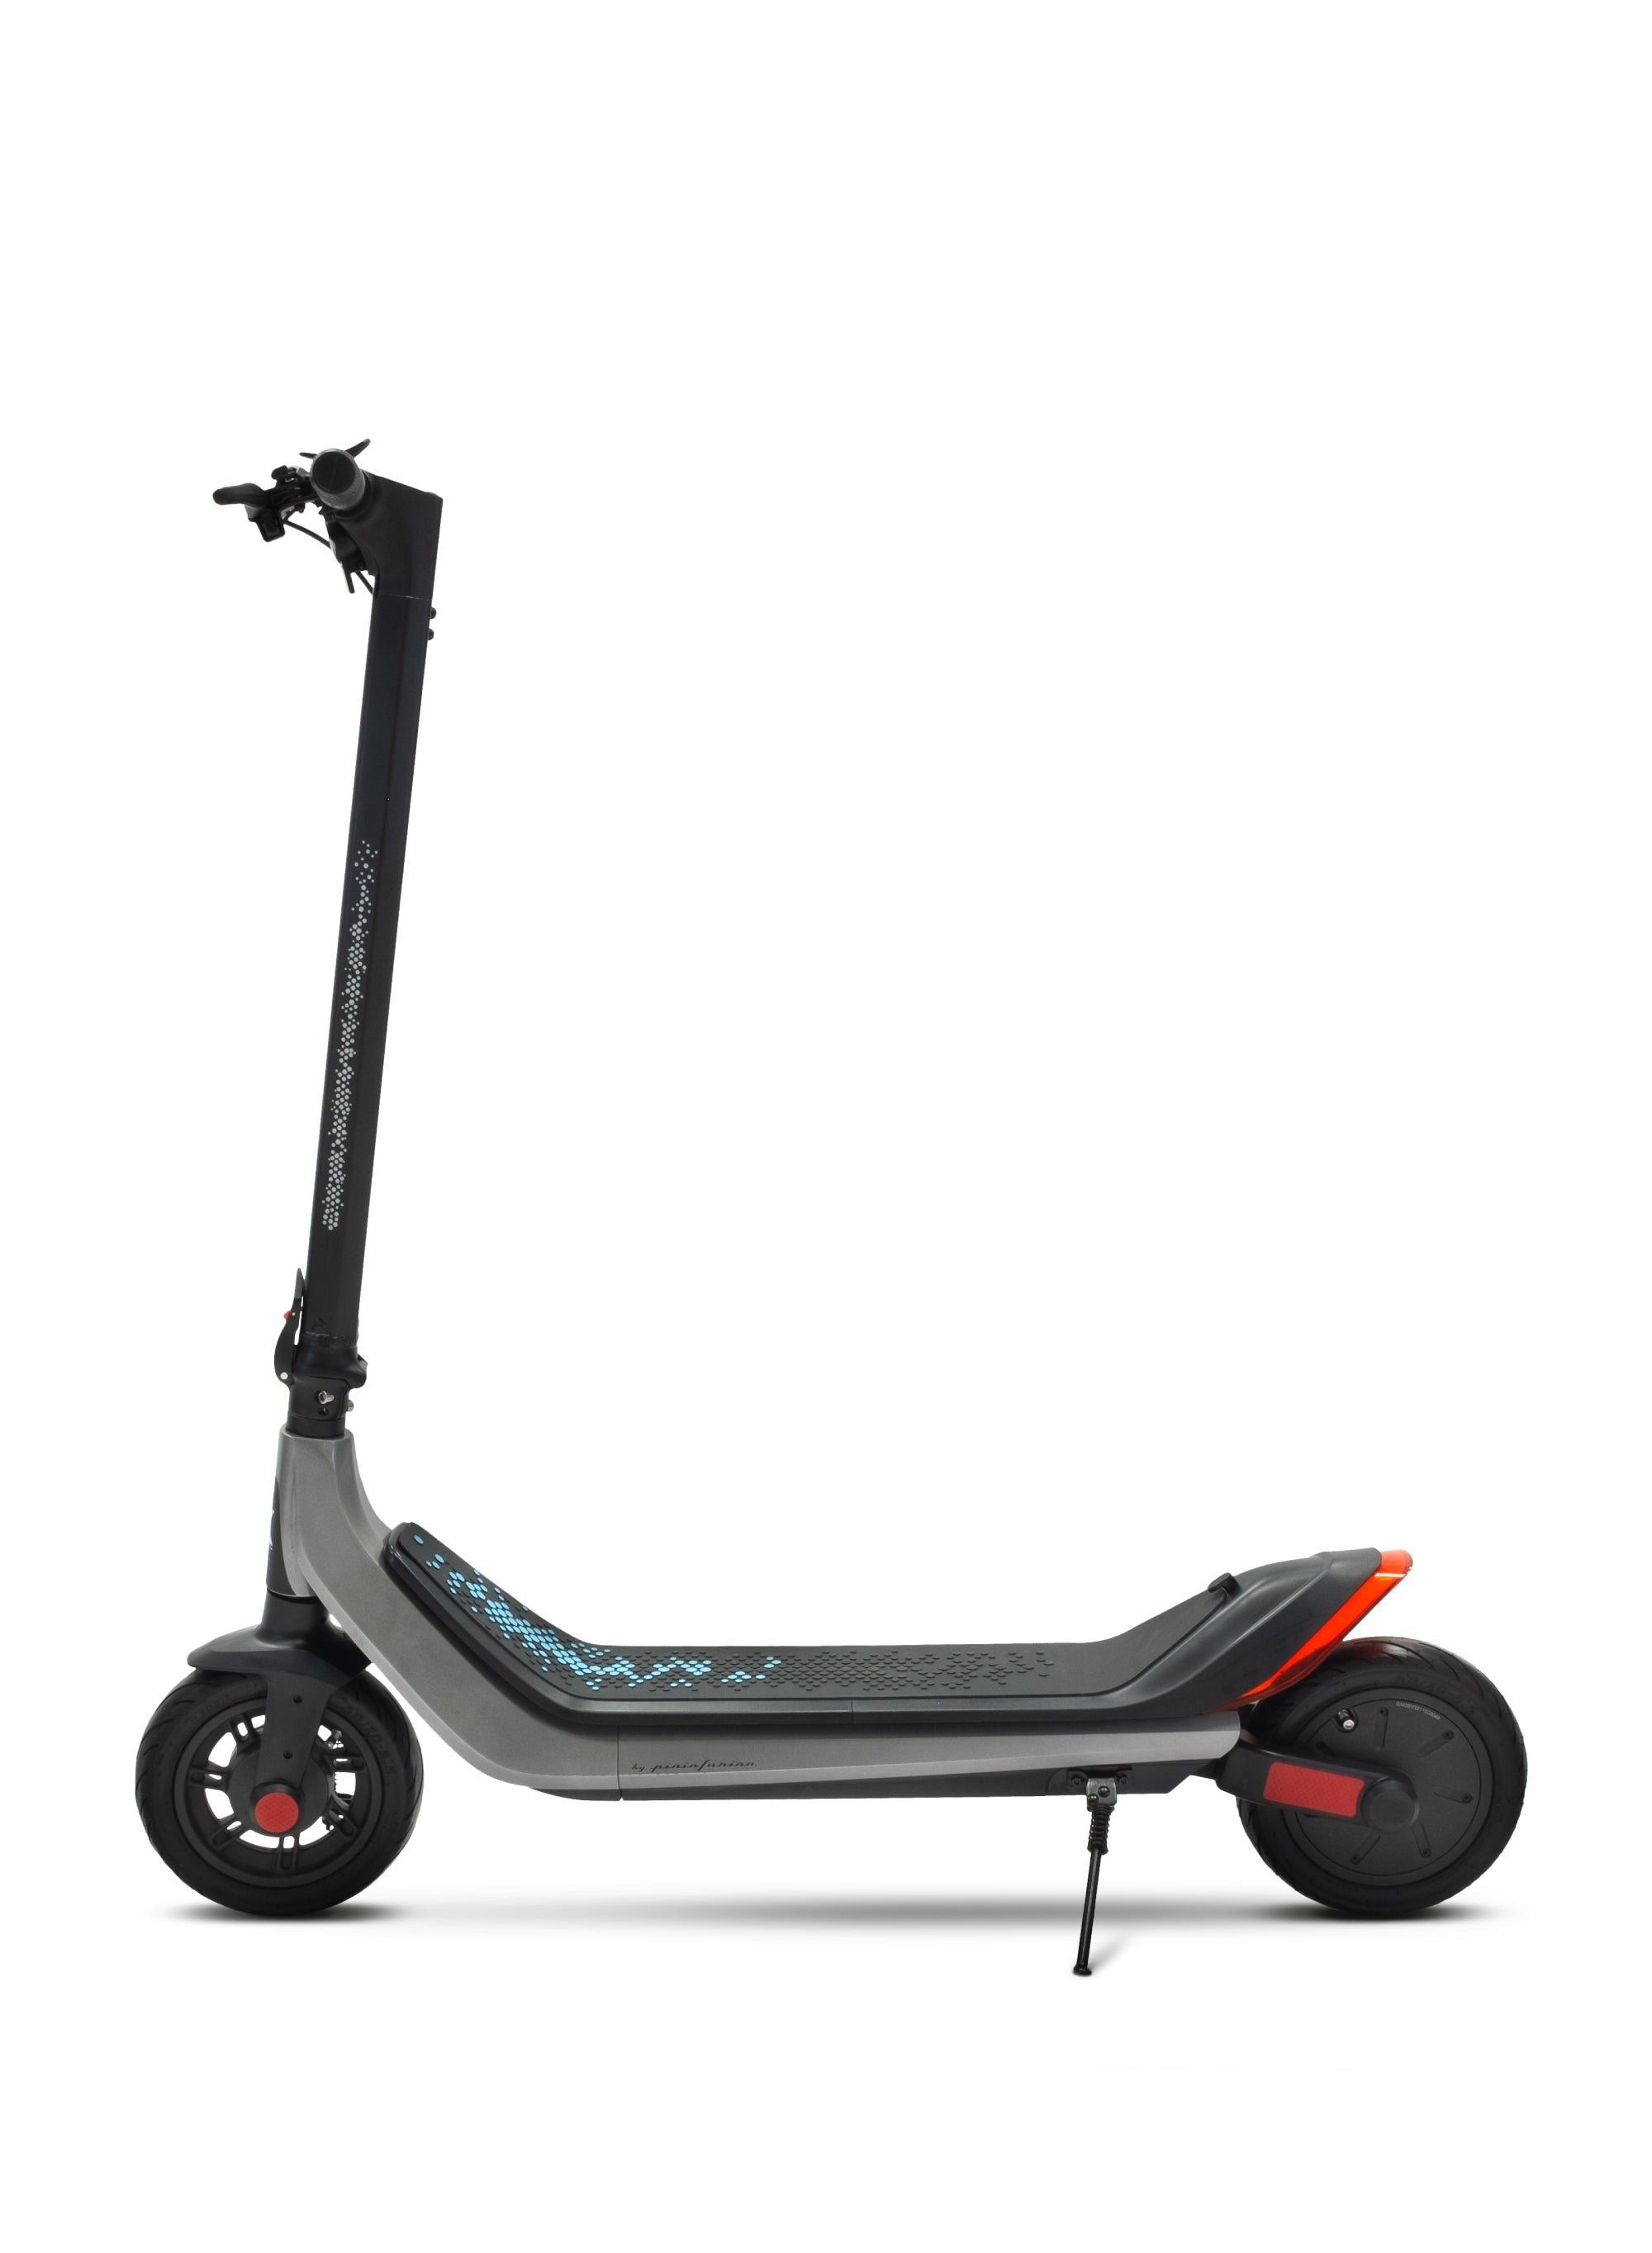 Electric Scooter Dubai